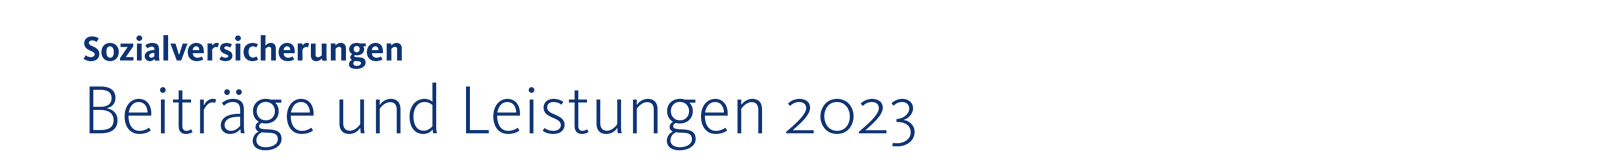 Titel_Beitraege-und-Leistungen-2023